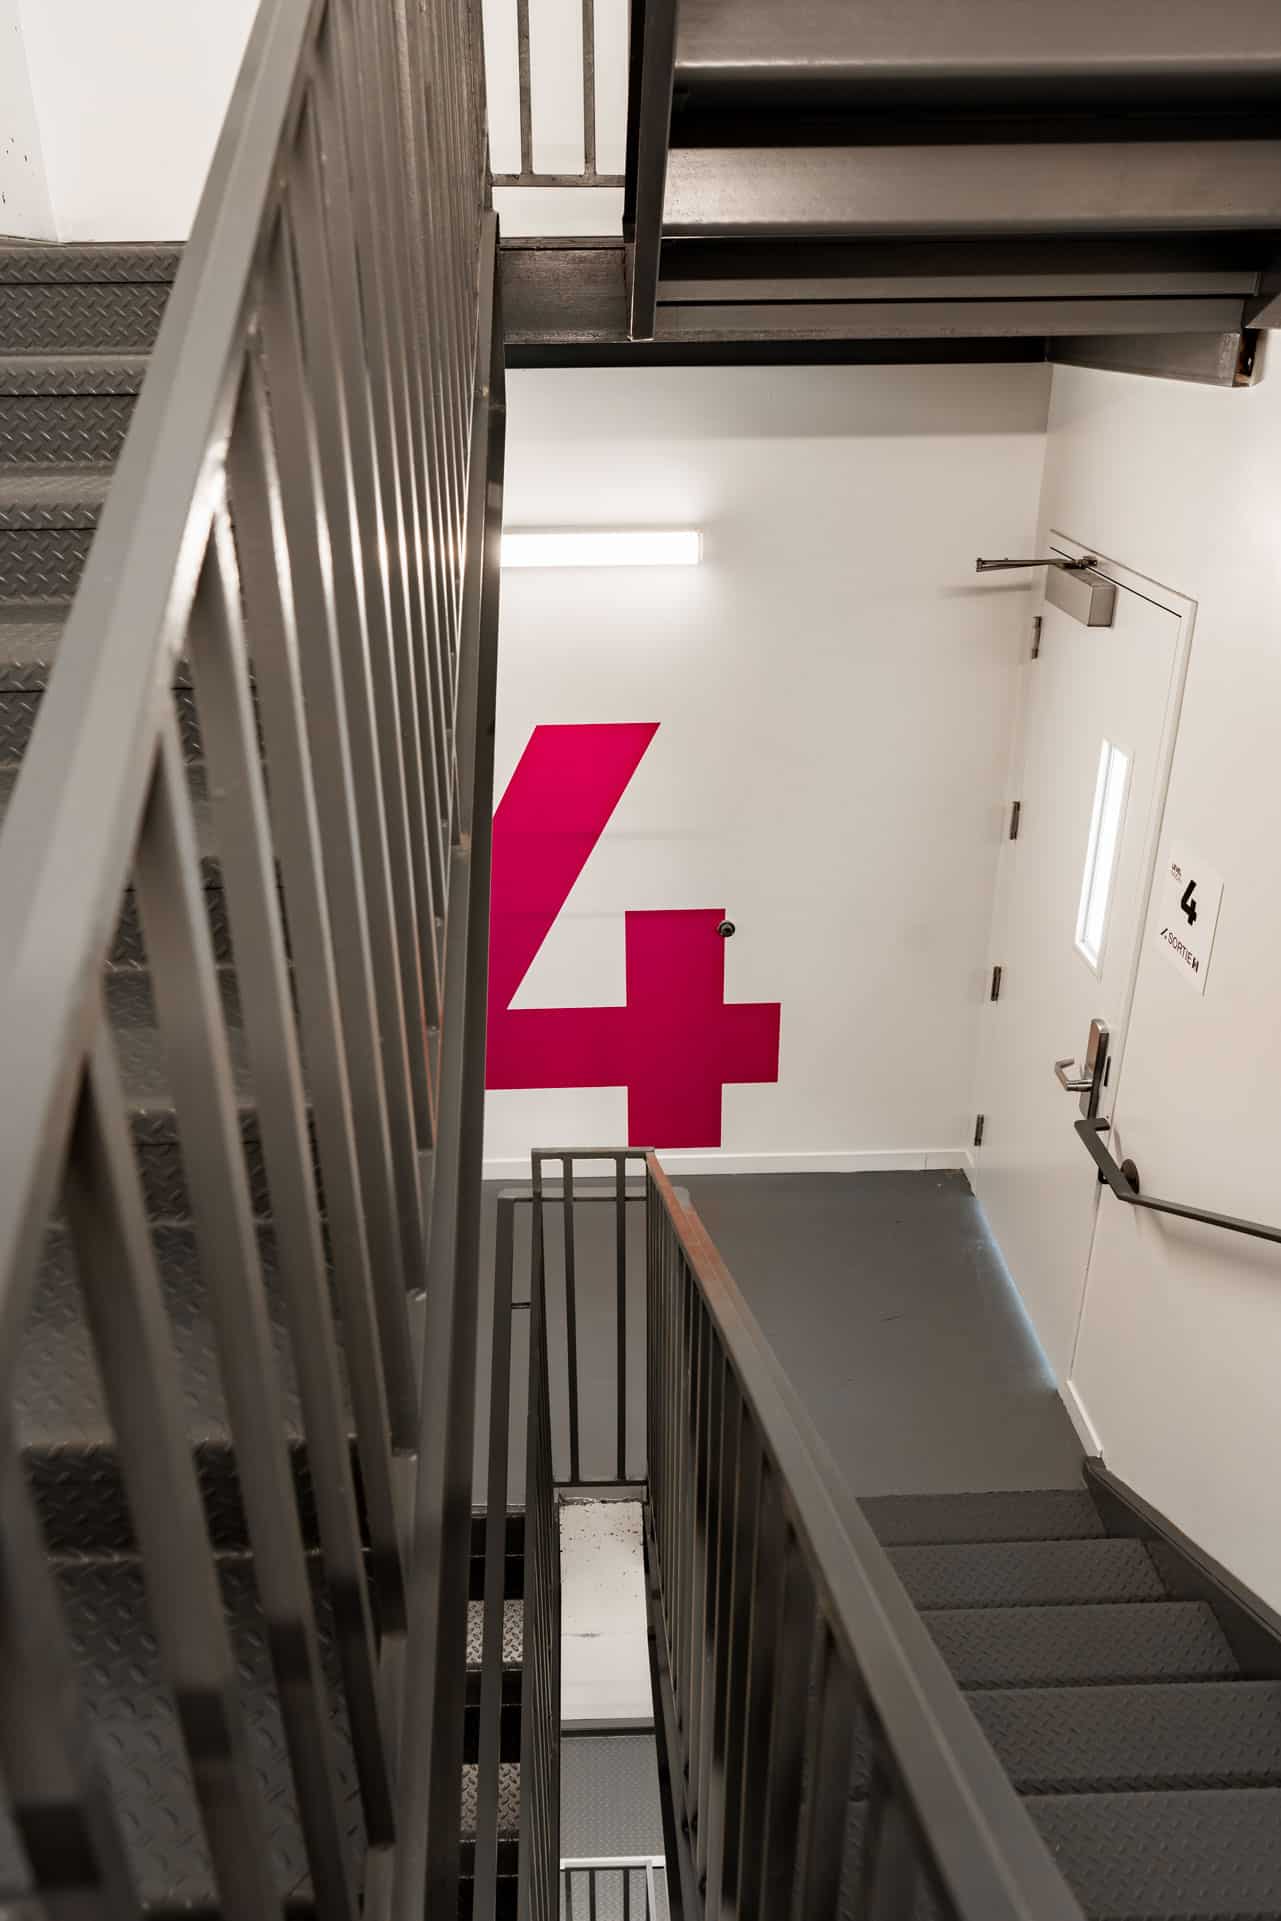 Arium Design - Identification de niveau en vinyle dans la cage d'escalier du niveau 4 du HUB de l'Université Concordia.